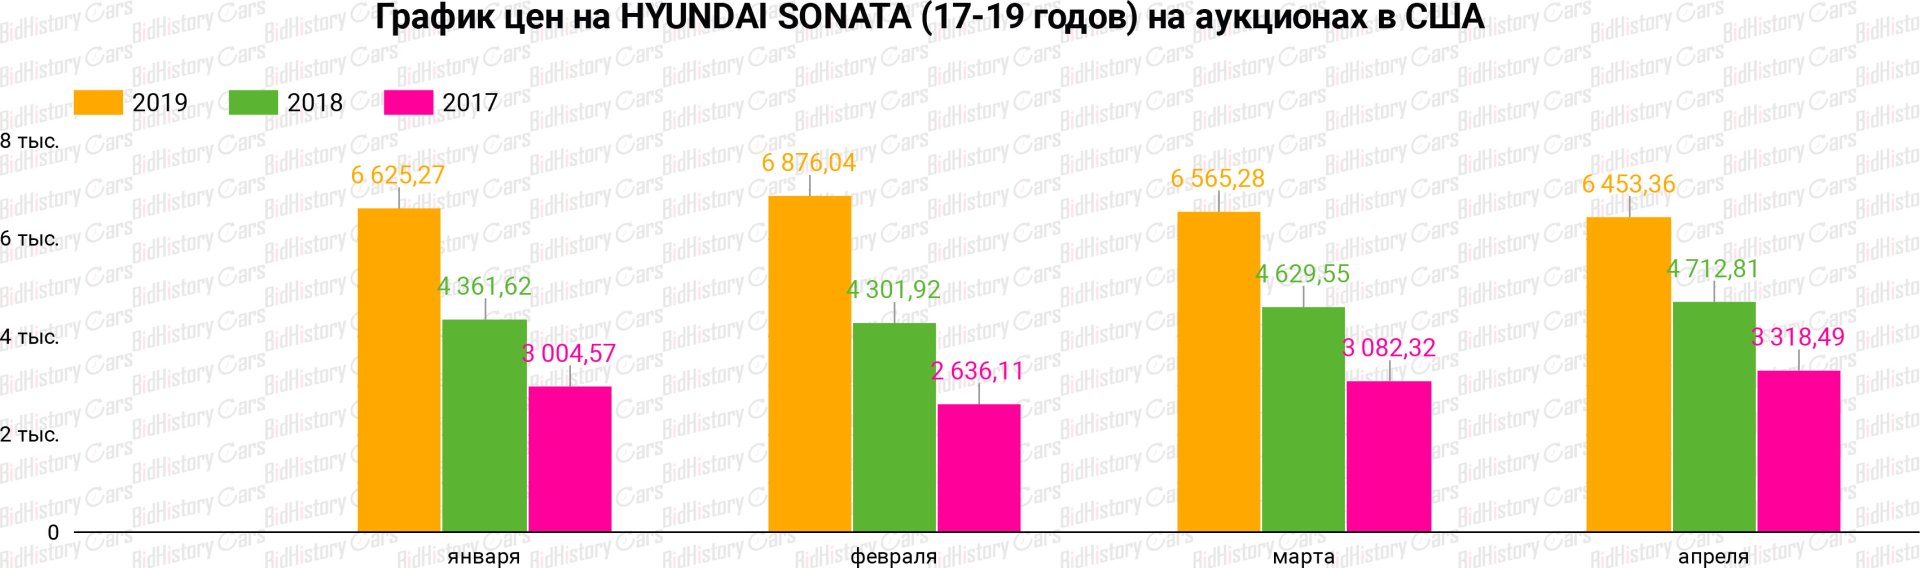 График цен HYUNDAI SONATA (17-19 годов) на аукционах в США